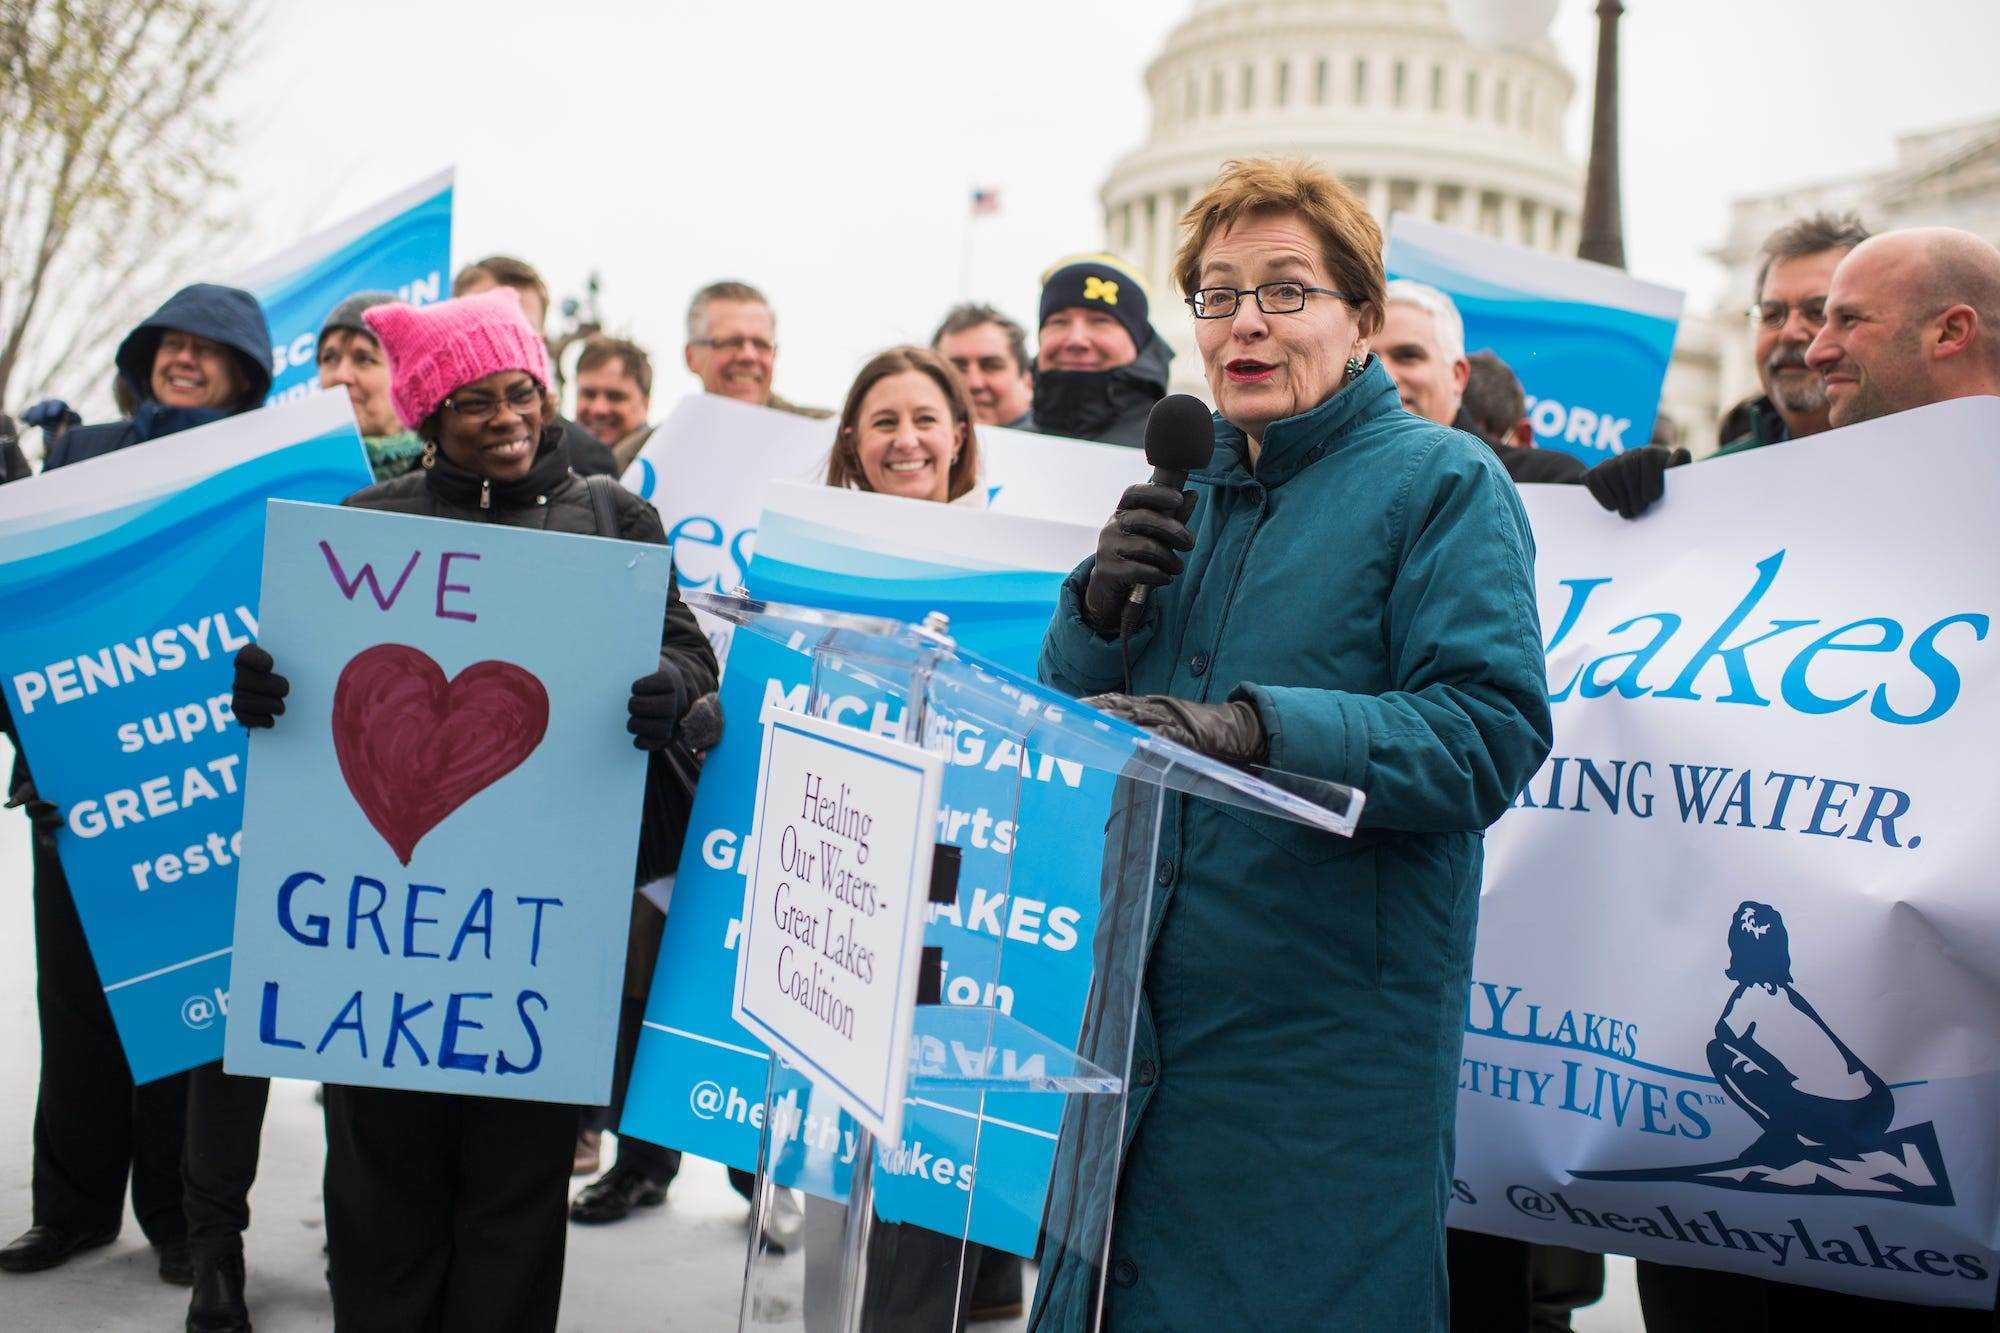 Die demokratische Abgeordnete Marcy Kaptur aus Ohio, die an einem scheinbar kühlen Tag in DC einen langen Mantel trägt, spricht eine Gruppe von Umweltschützern an, die sich zu einer Pro-Great Lakes-Restaurierungskundgebung auf dem Capitol Hill versammelt haben.